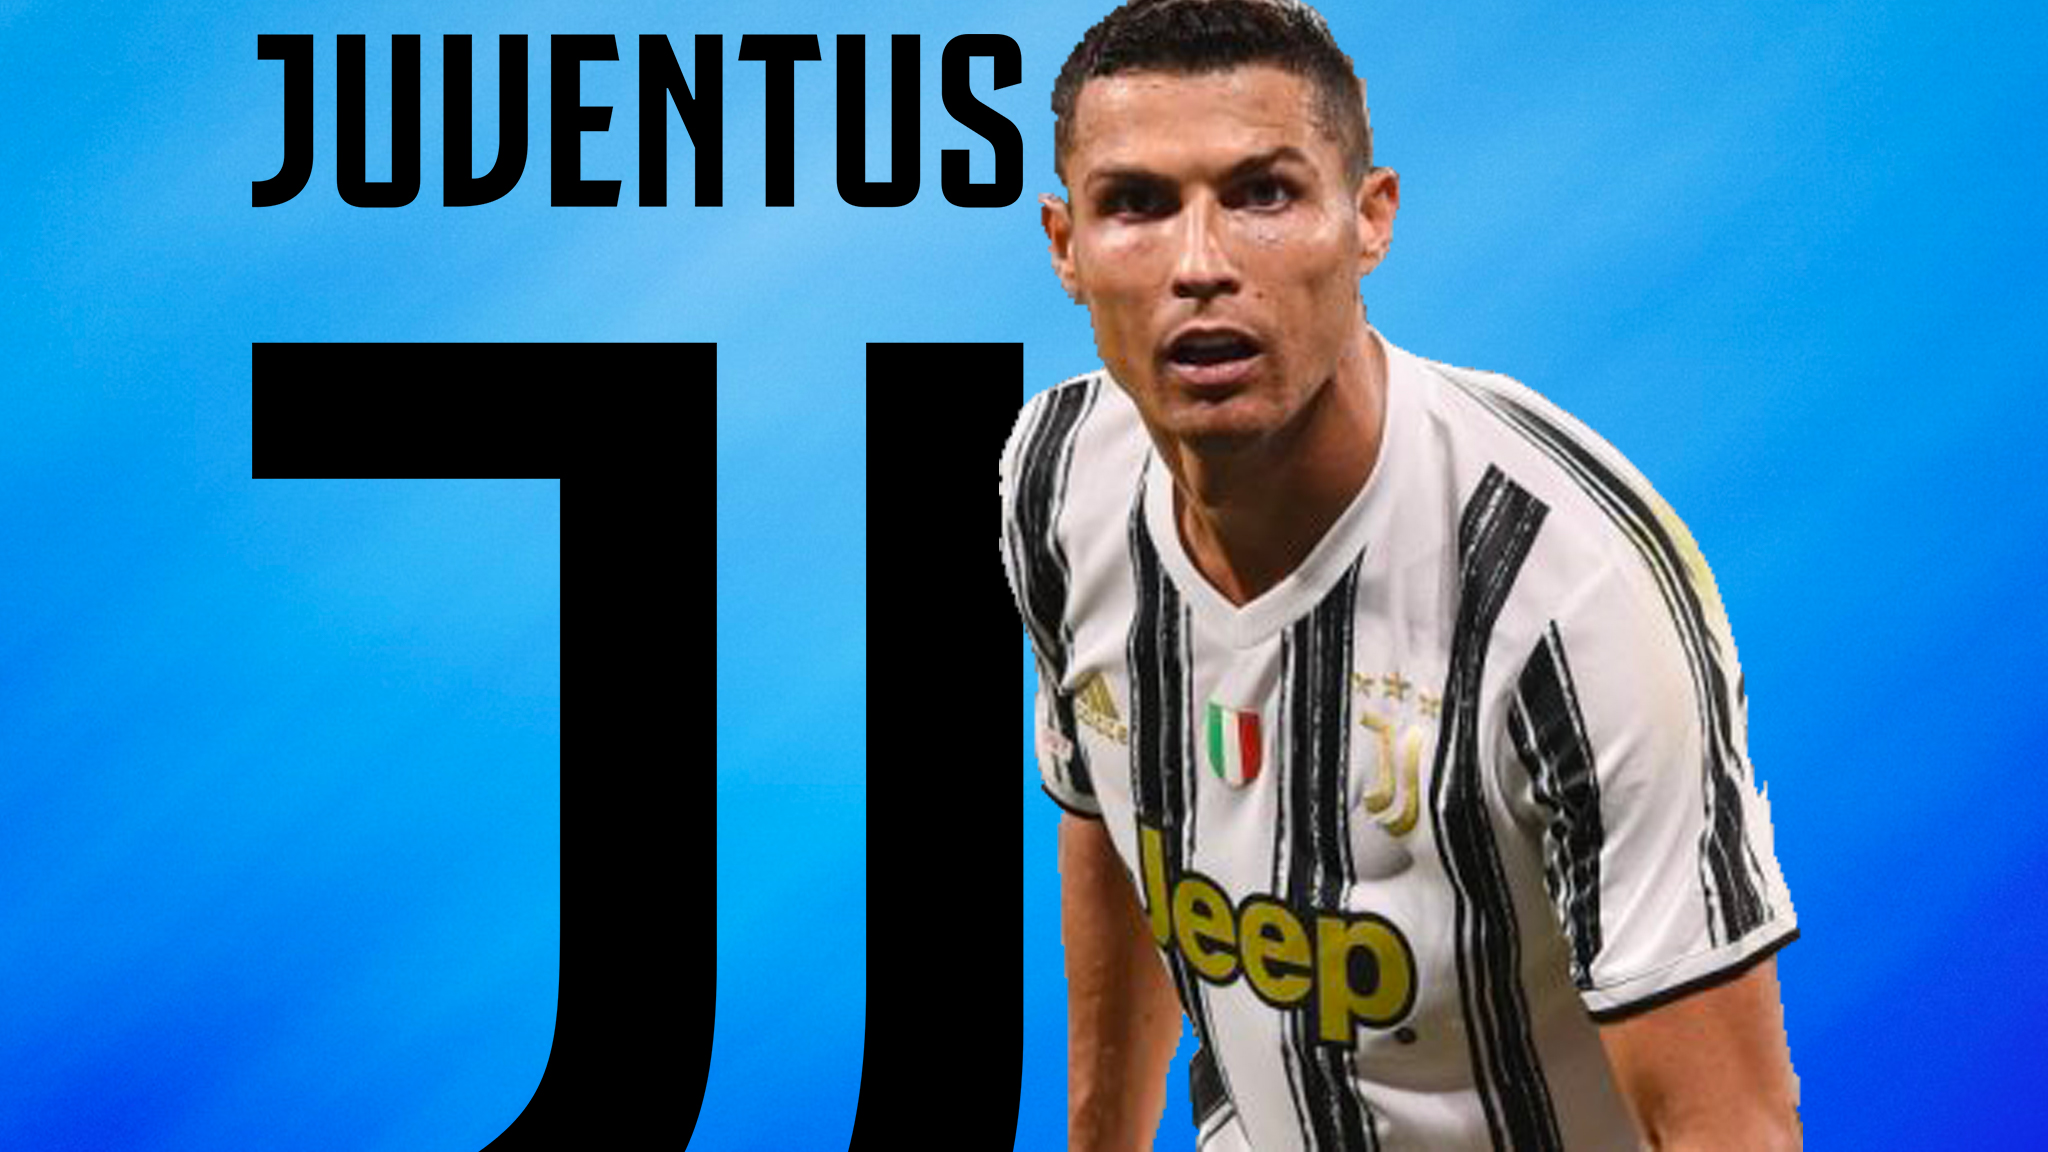 C’est tranché, la Juventus a répondu aux rumeurs de départ de Ronaldo